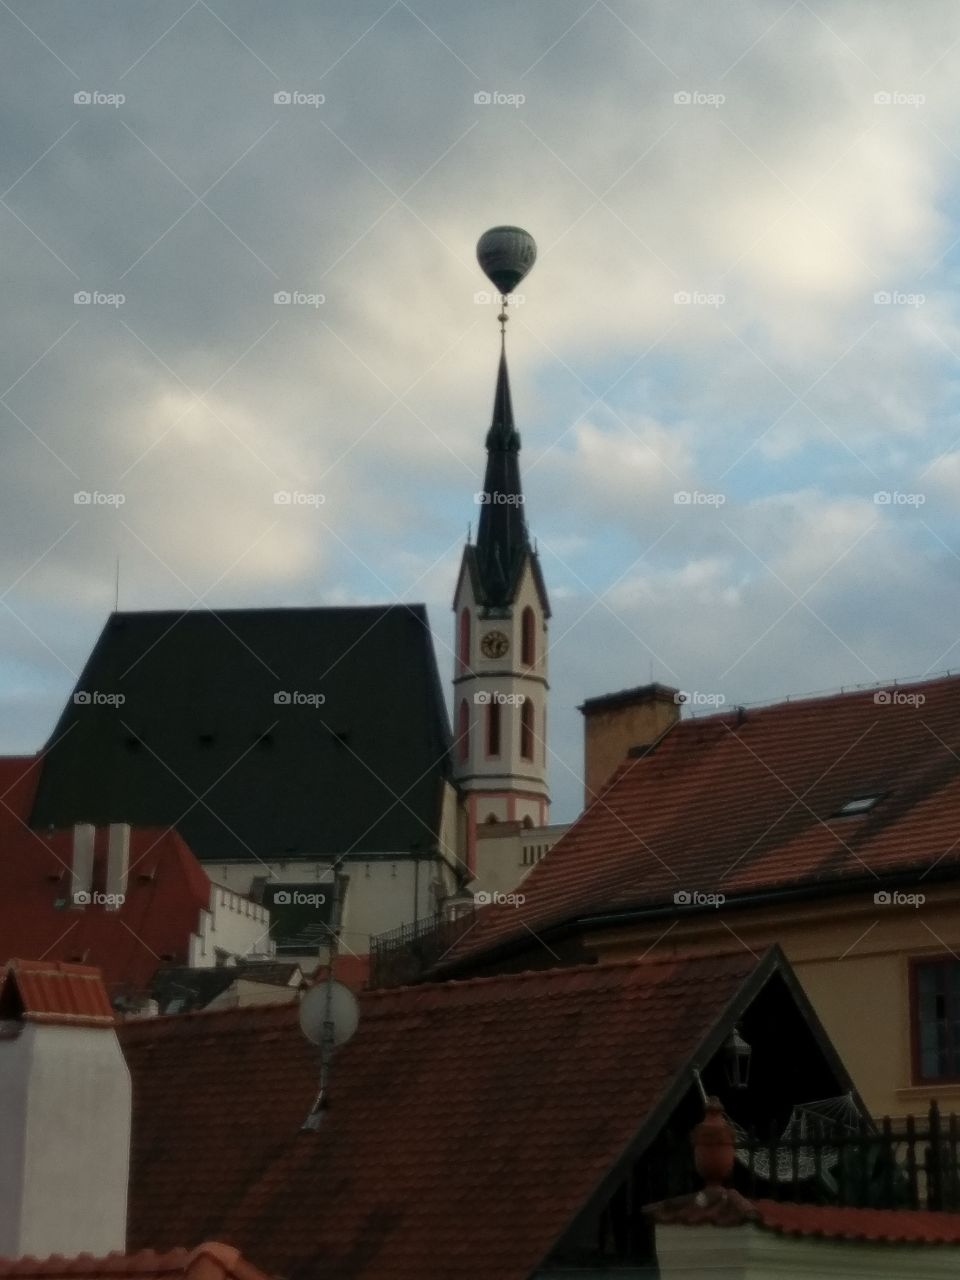 Church and balloon in Český Krumlov